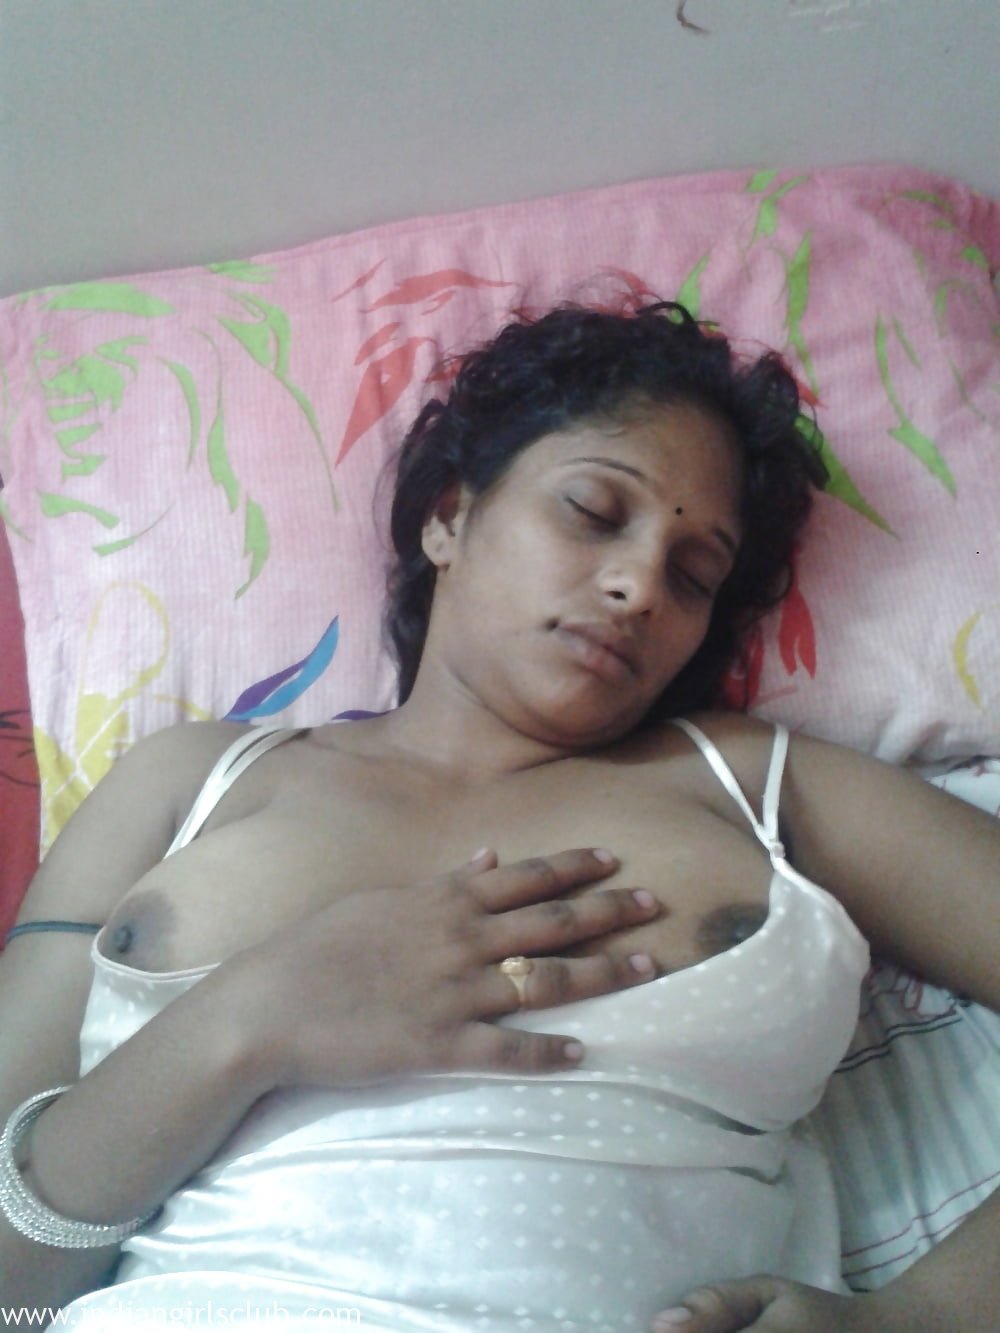 Sleeping Aunty - Juicy Indian Aunty Sleeping Naked Big Boobs Exposed - Indian Girls Club